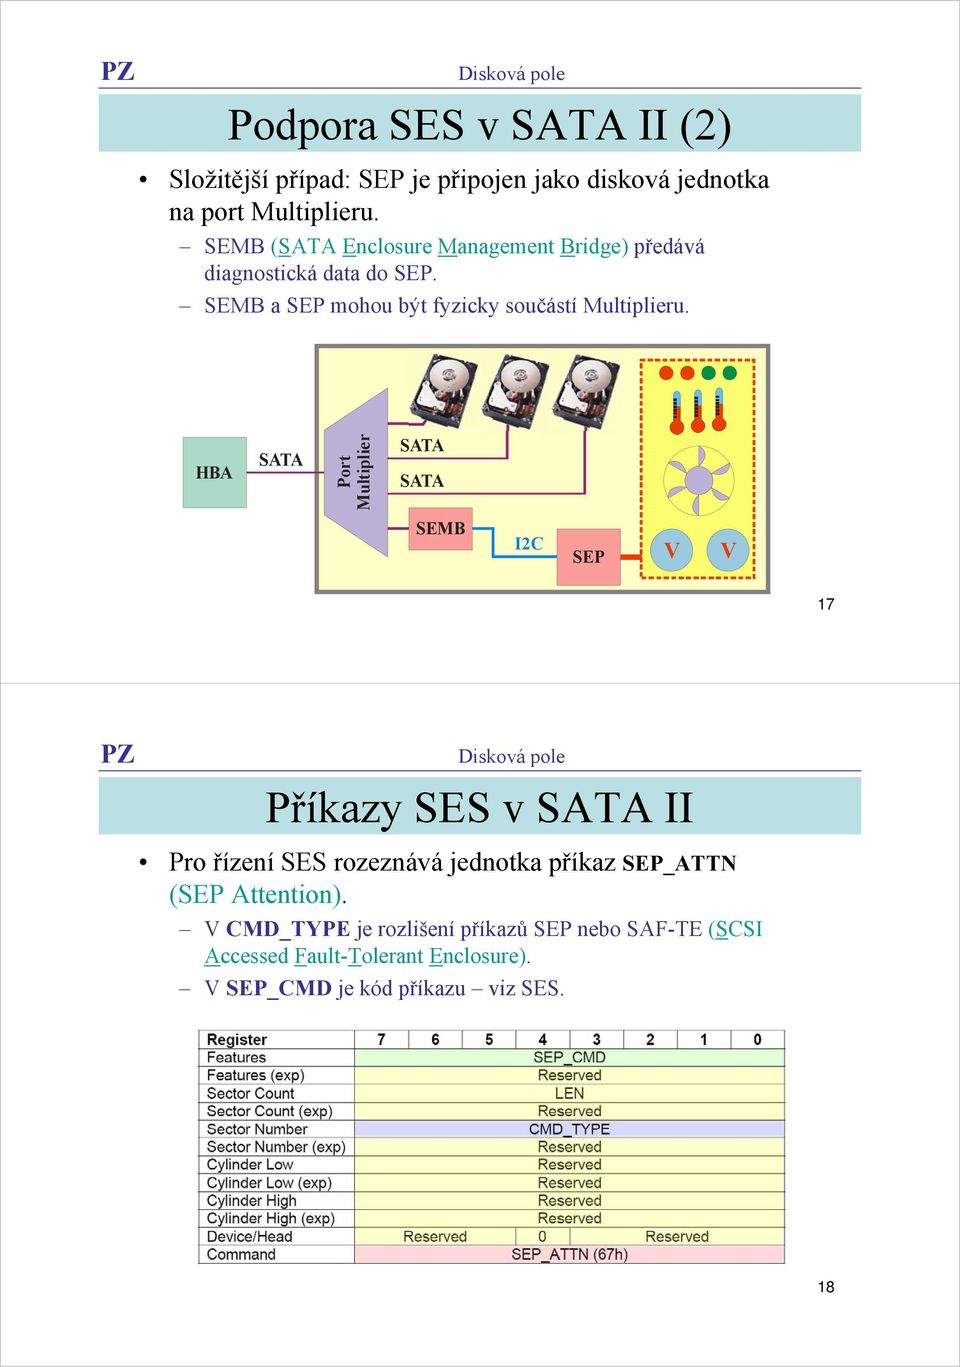 HBA SATA Port Multiplier SATA SATA SEMB IC V V SEP 7 Příkazy SES v SATA II Pro řízení SES rozeznává jednotka příkaz